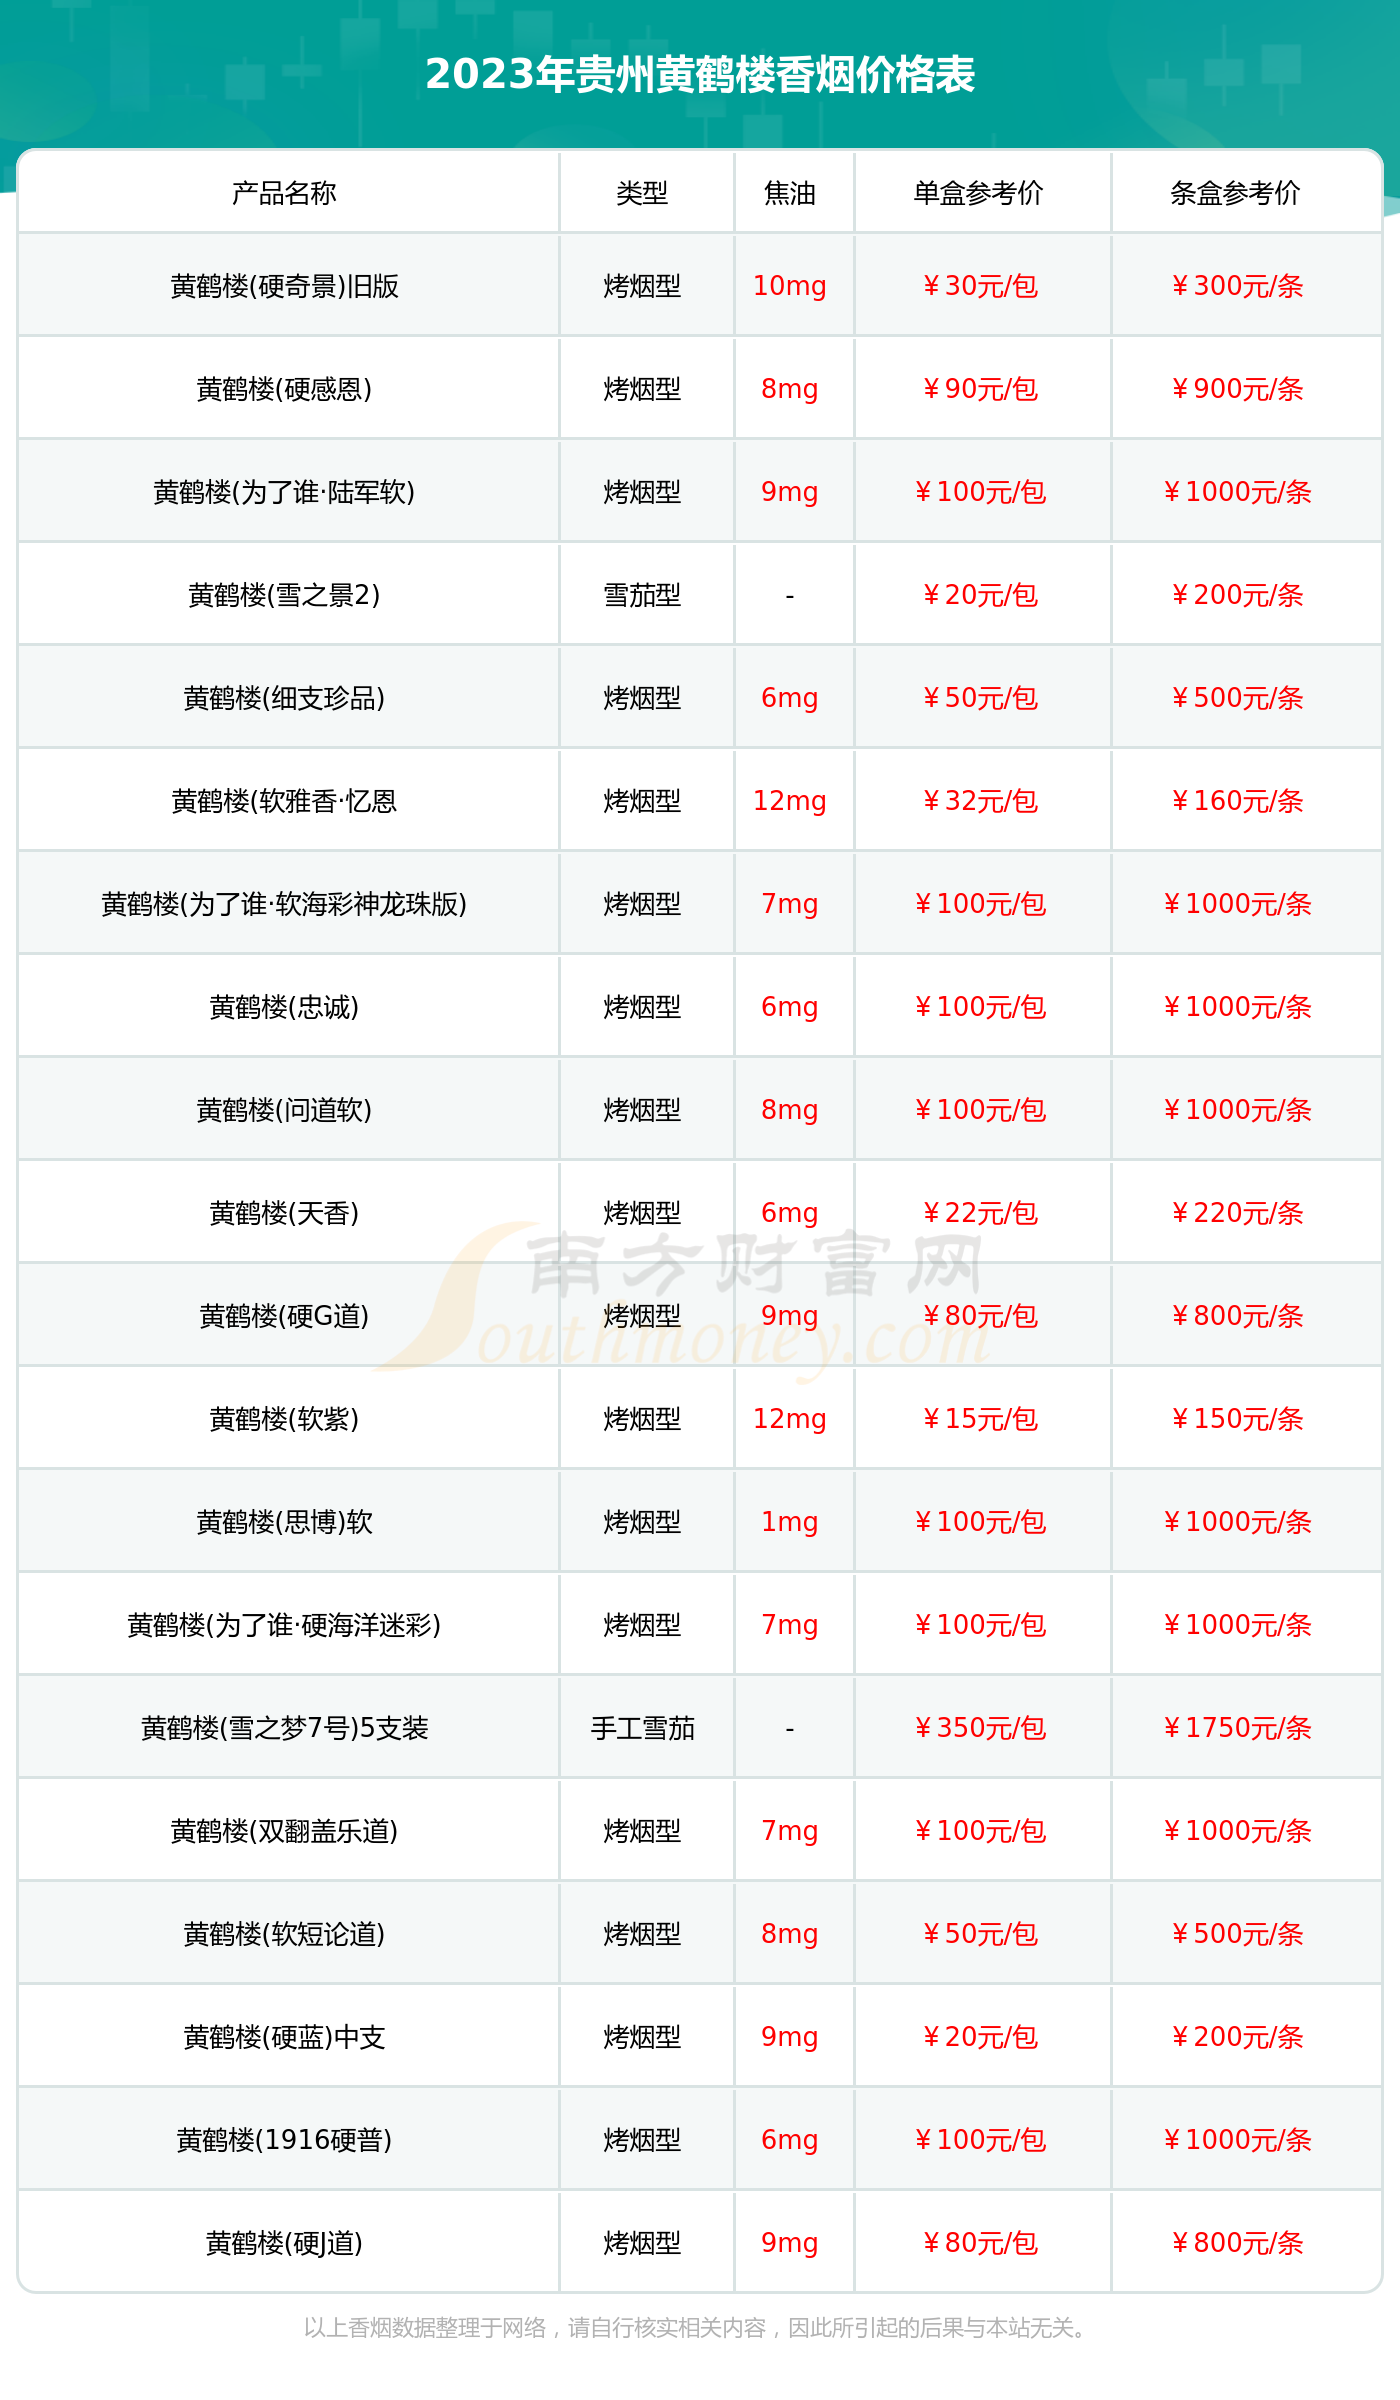 贵州紫河车胶囊价格图片